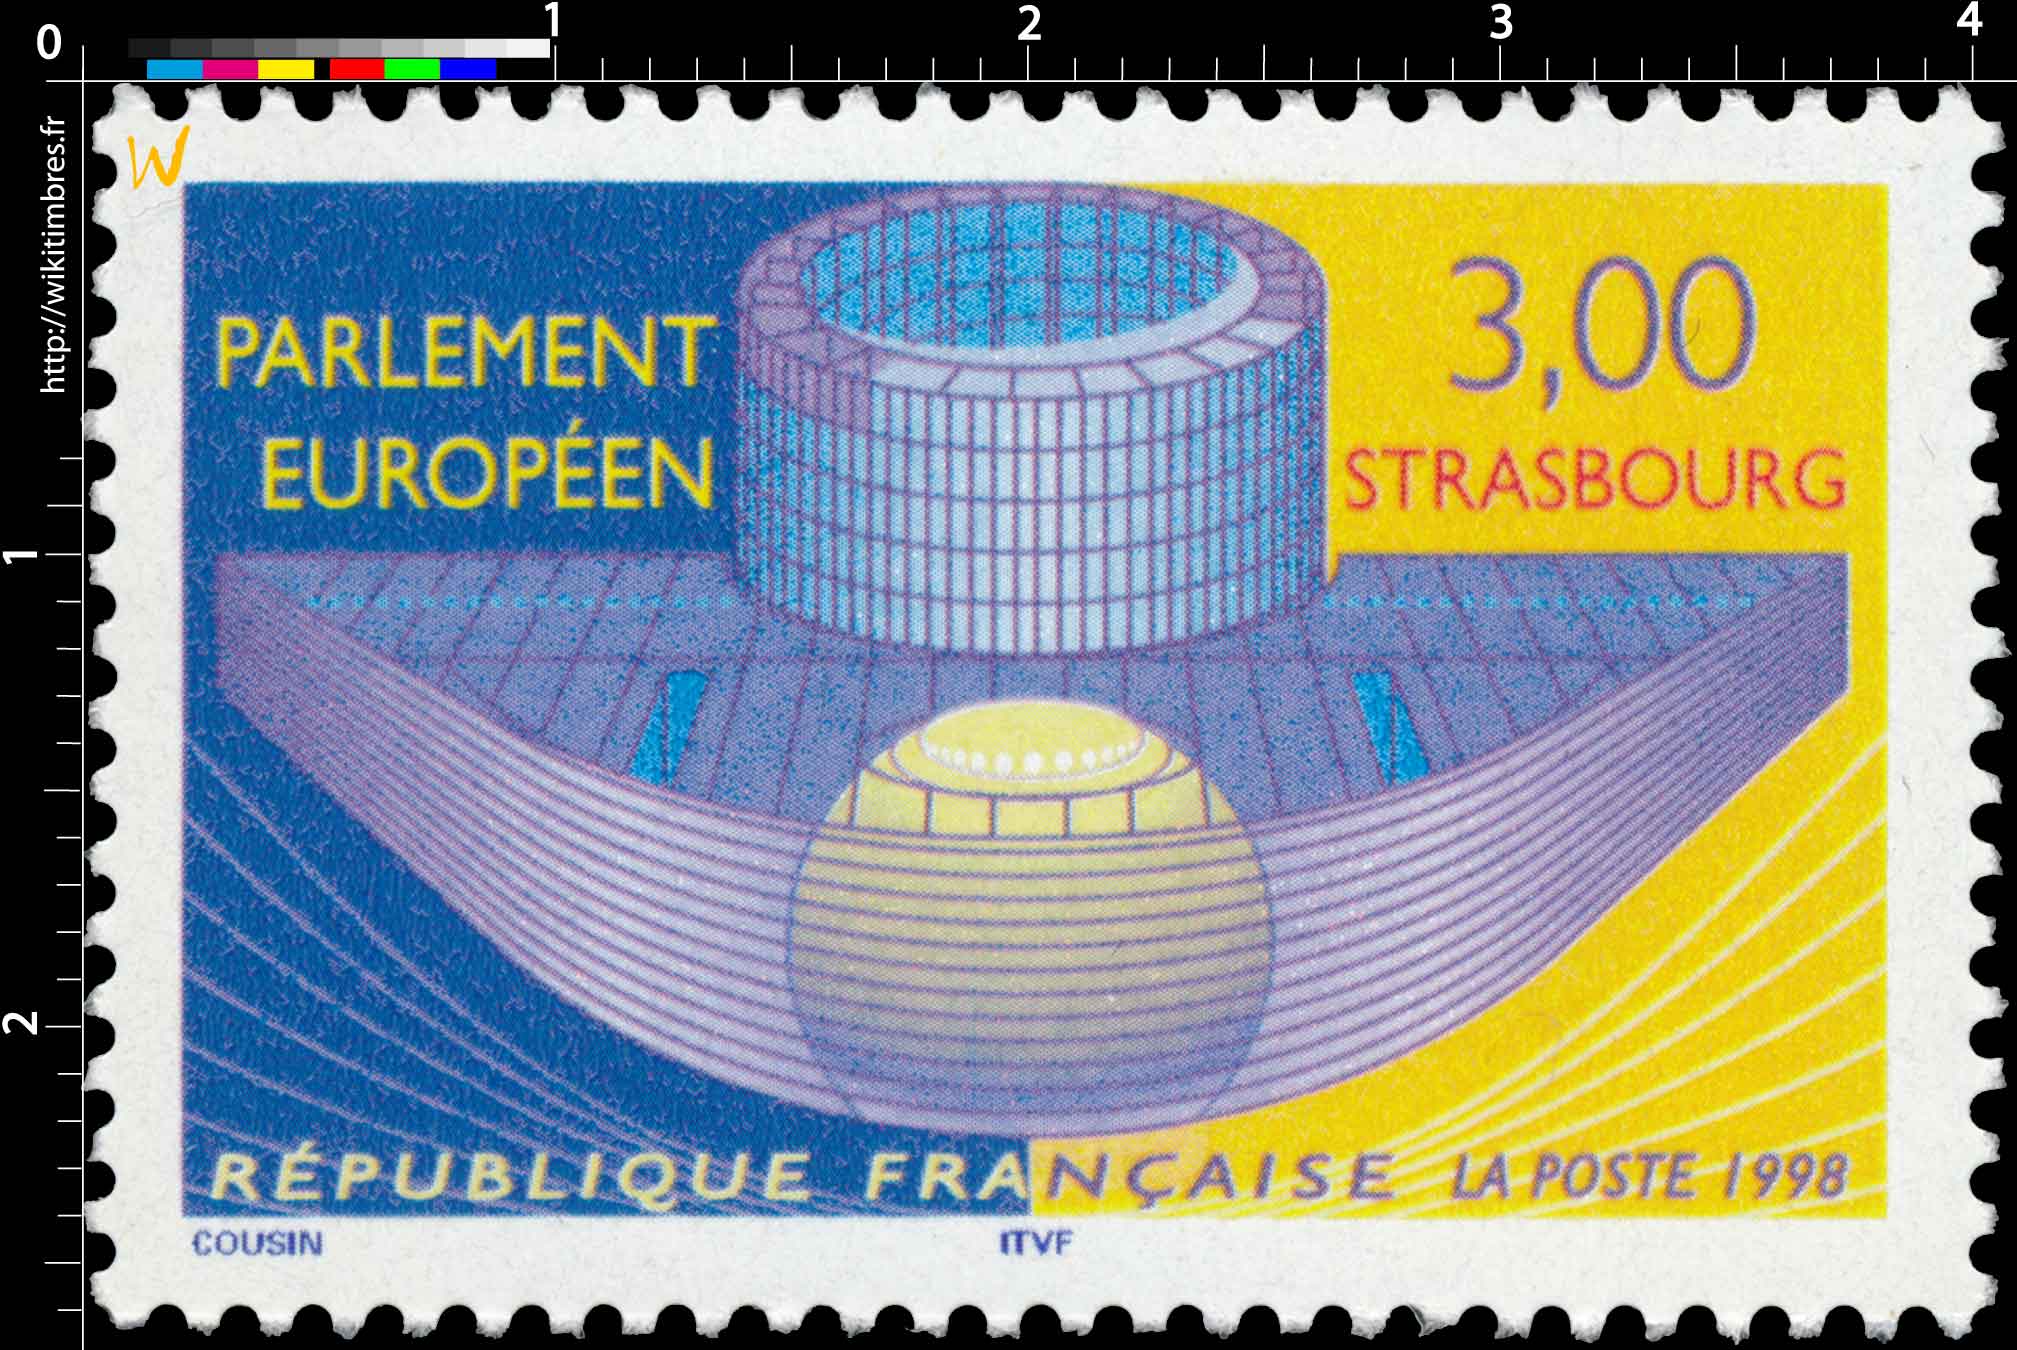 1998 PARLEMENT EUROPÉEN STRASBOURG